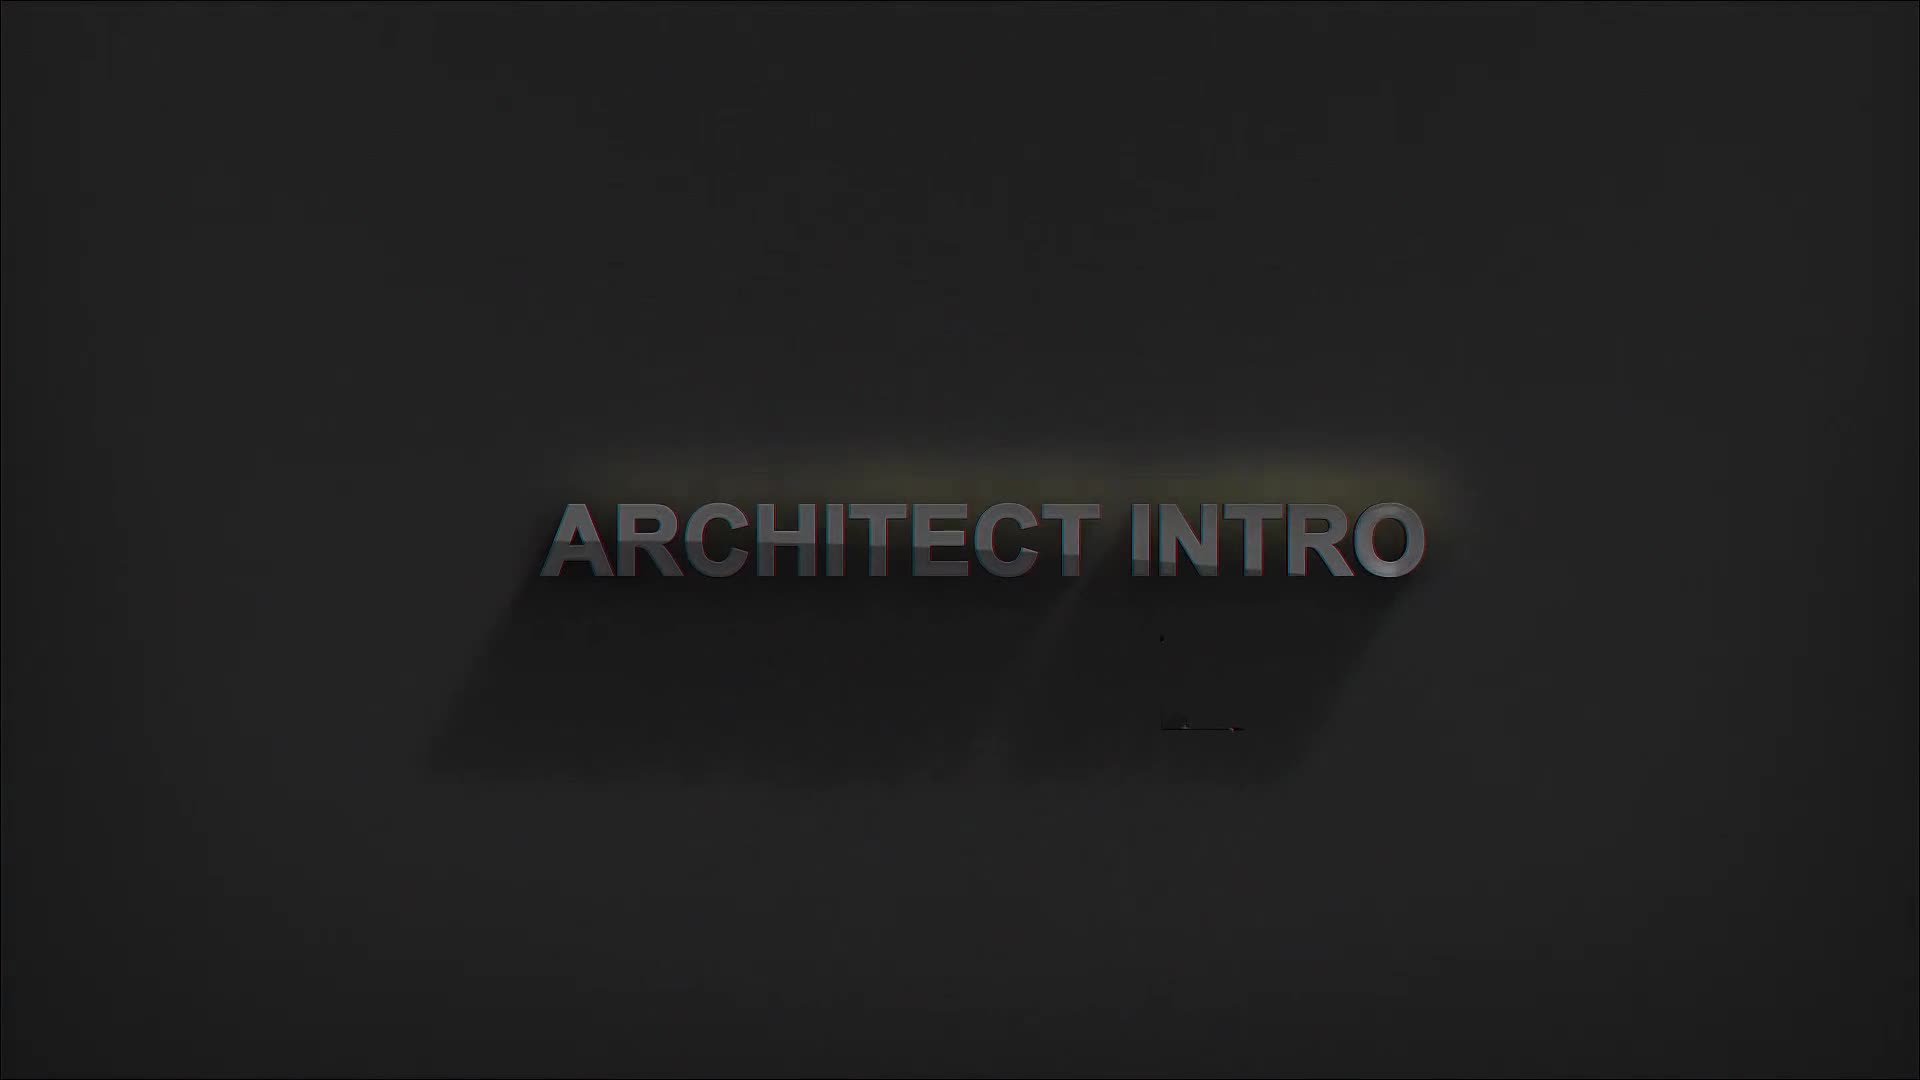 Architect Intro Videohive 30289475 Premiere Pro Image 8